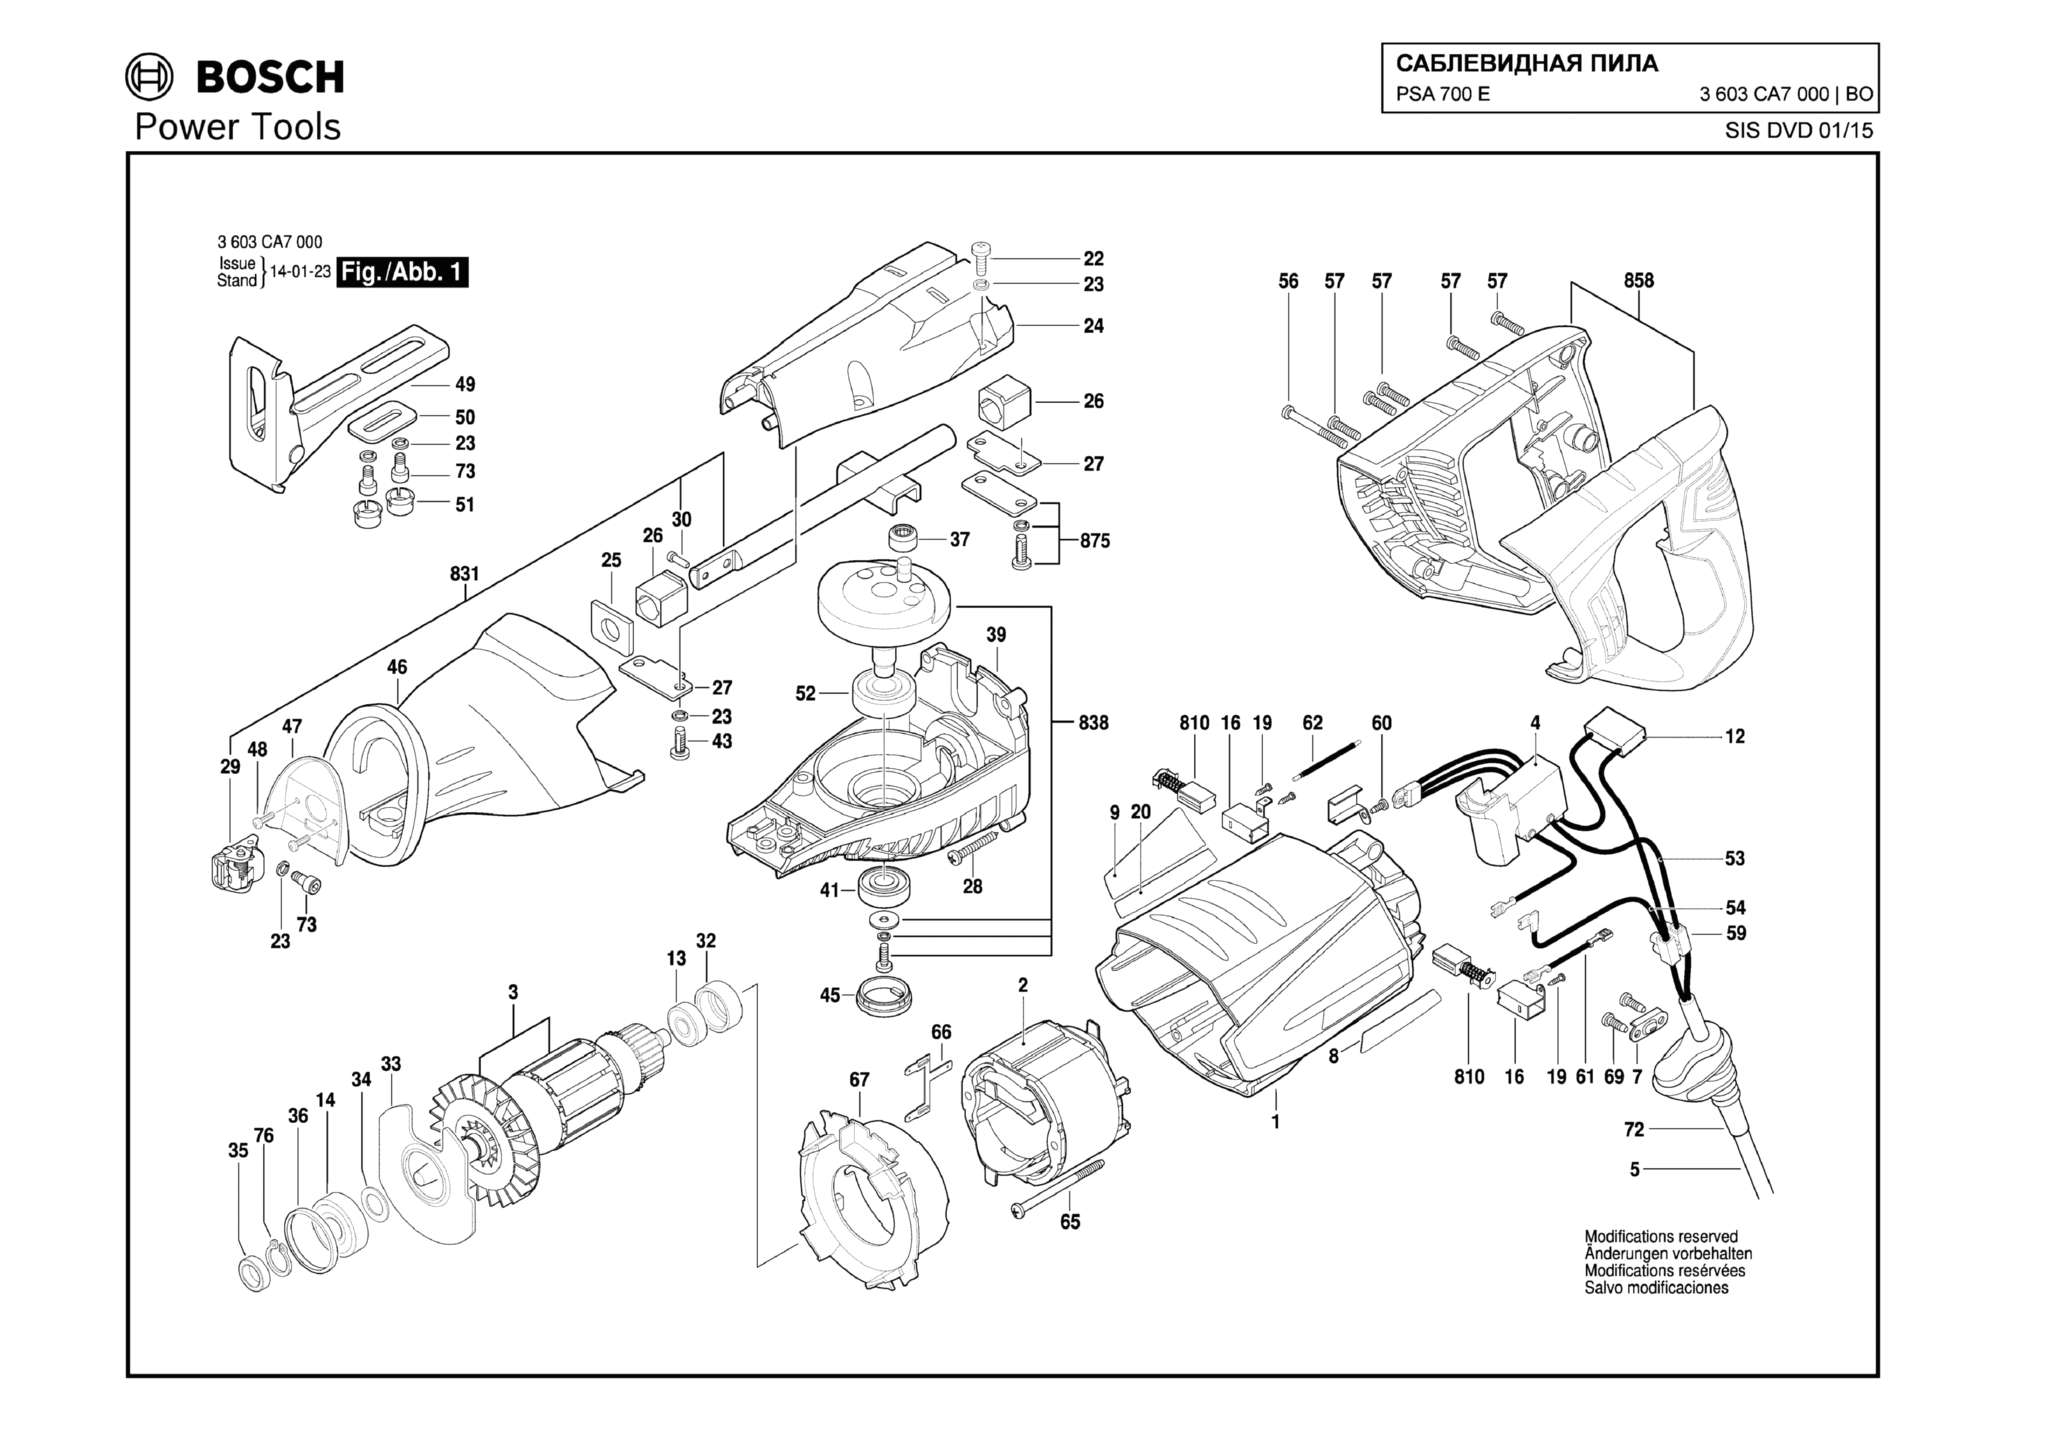 Запчасти, схема и деталировка Bosch PSA 700 E (ТИП 3603CA7000)